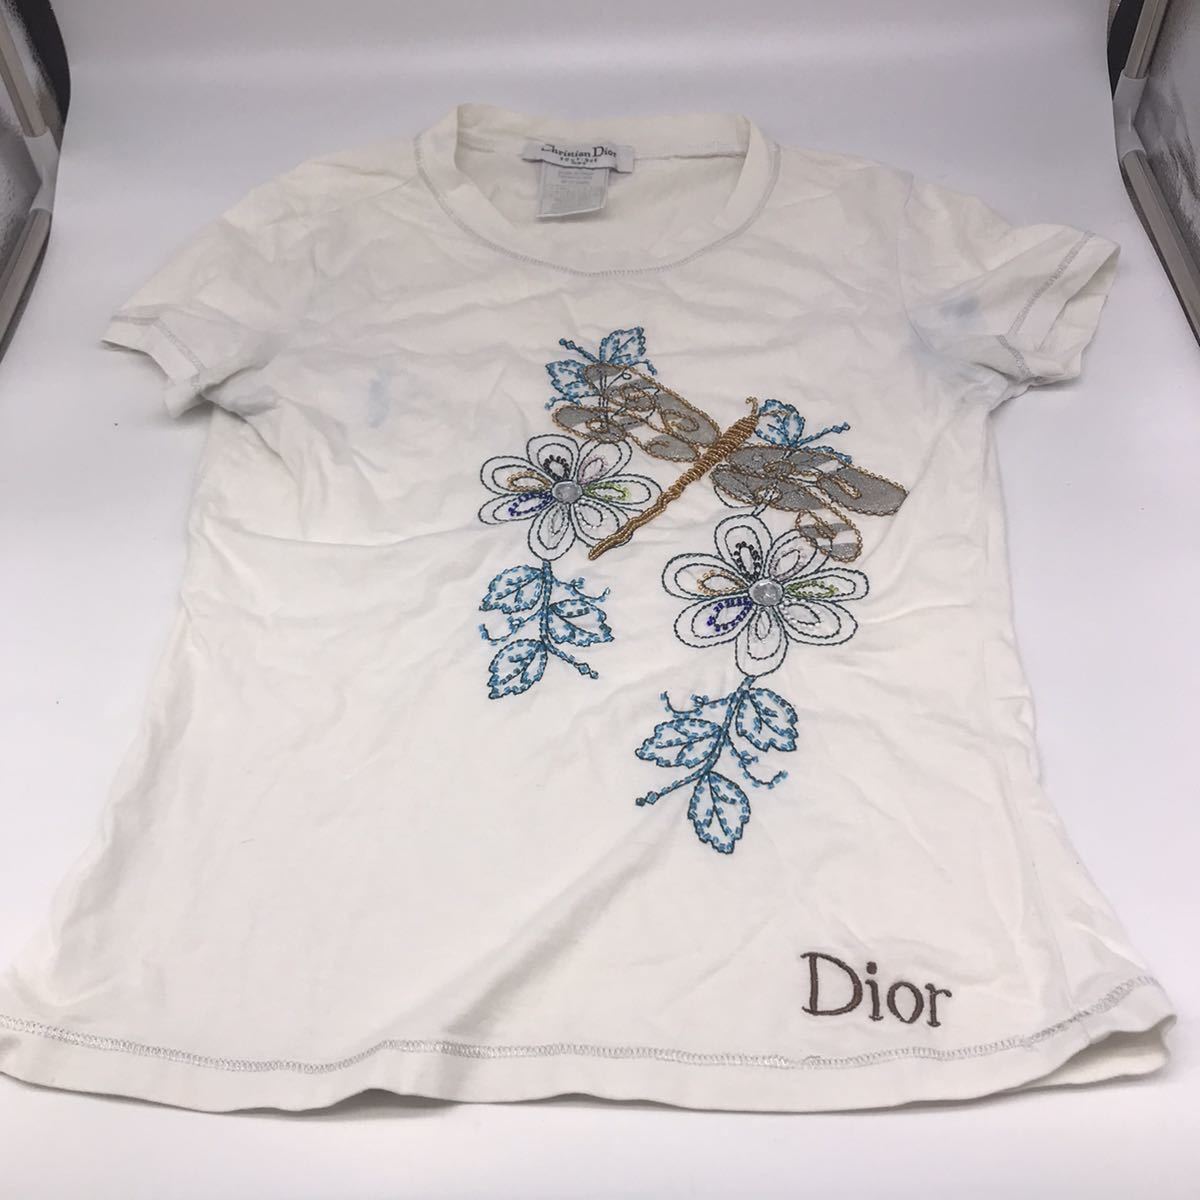 ヤフオク! -「christian dior tシャツ」(女性用) (ディオール)の落札 